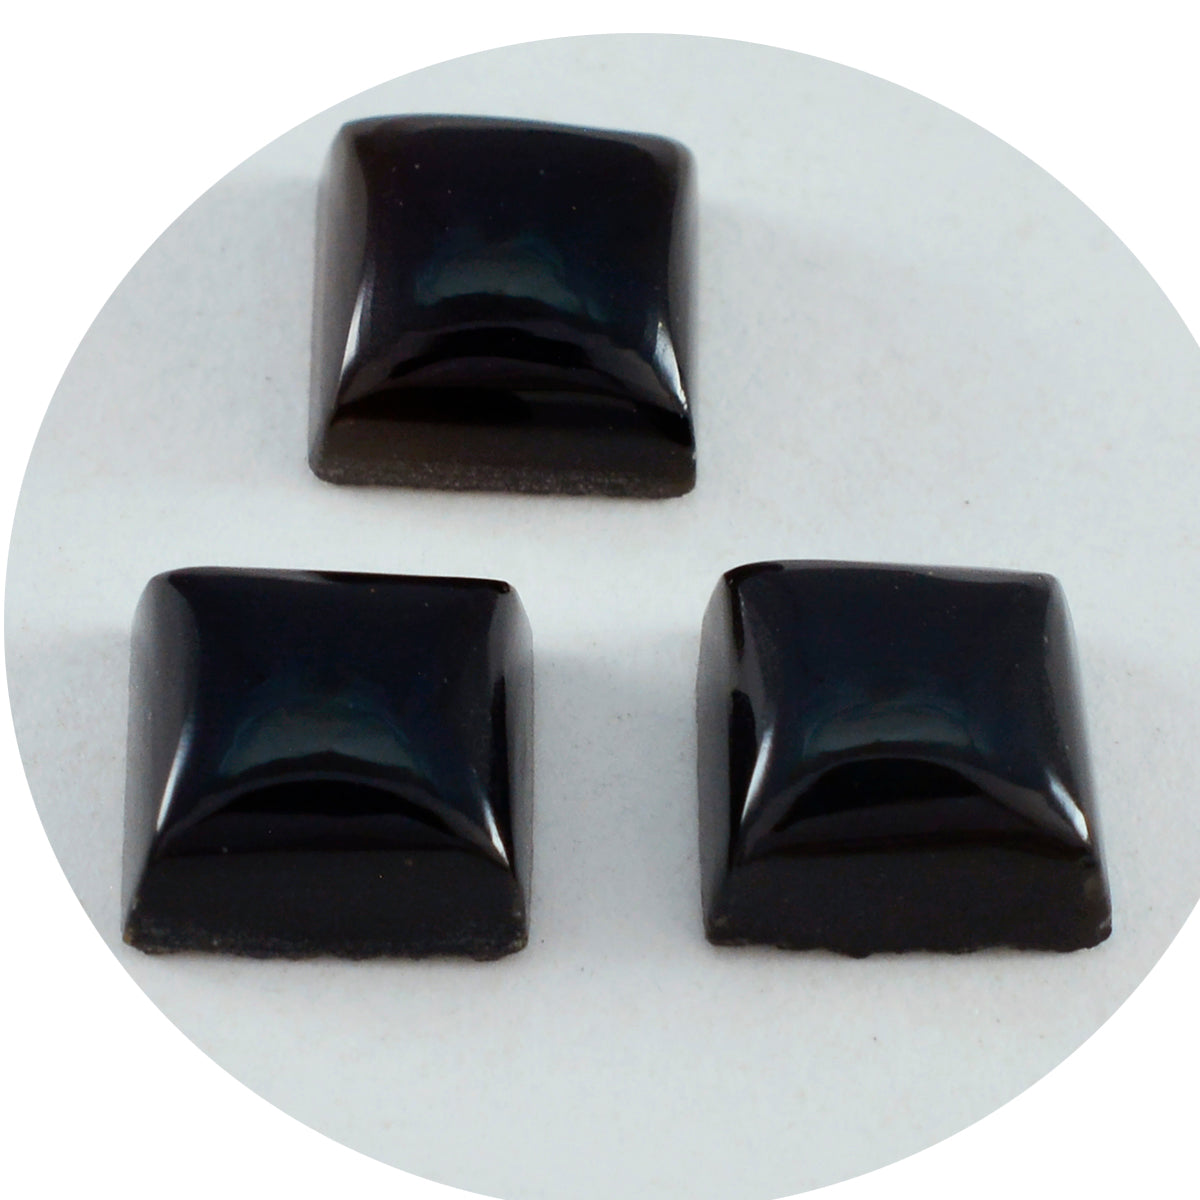 Riyogems 1 Stück schwarzer Onyx-Cabochon, 14 x 14 mm, quadratische Form, toller Qualitäts-Edelstein